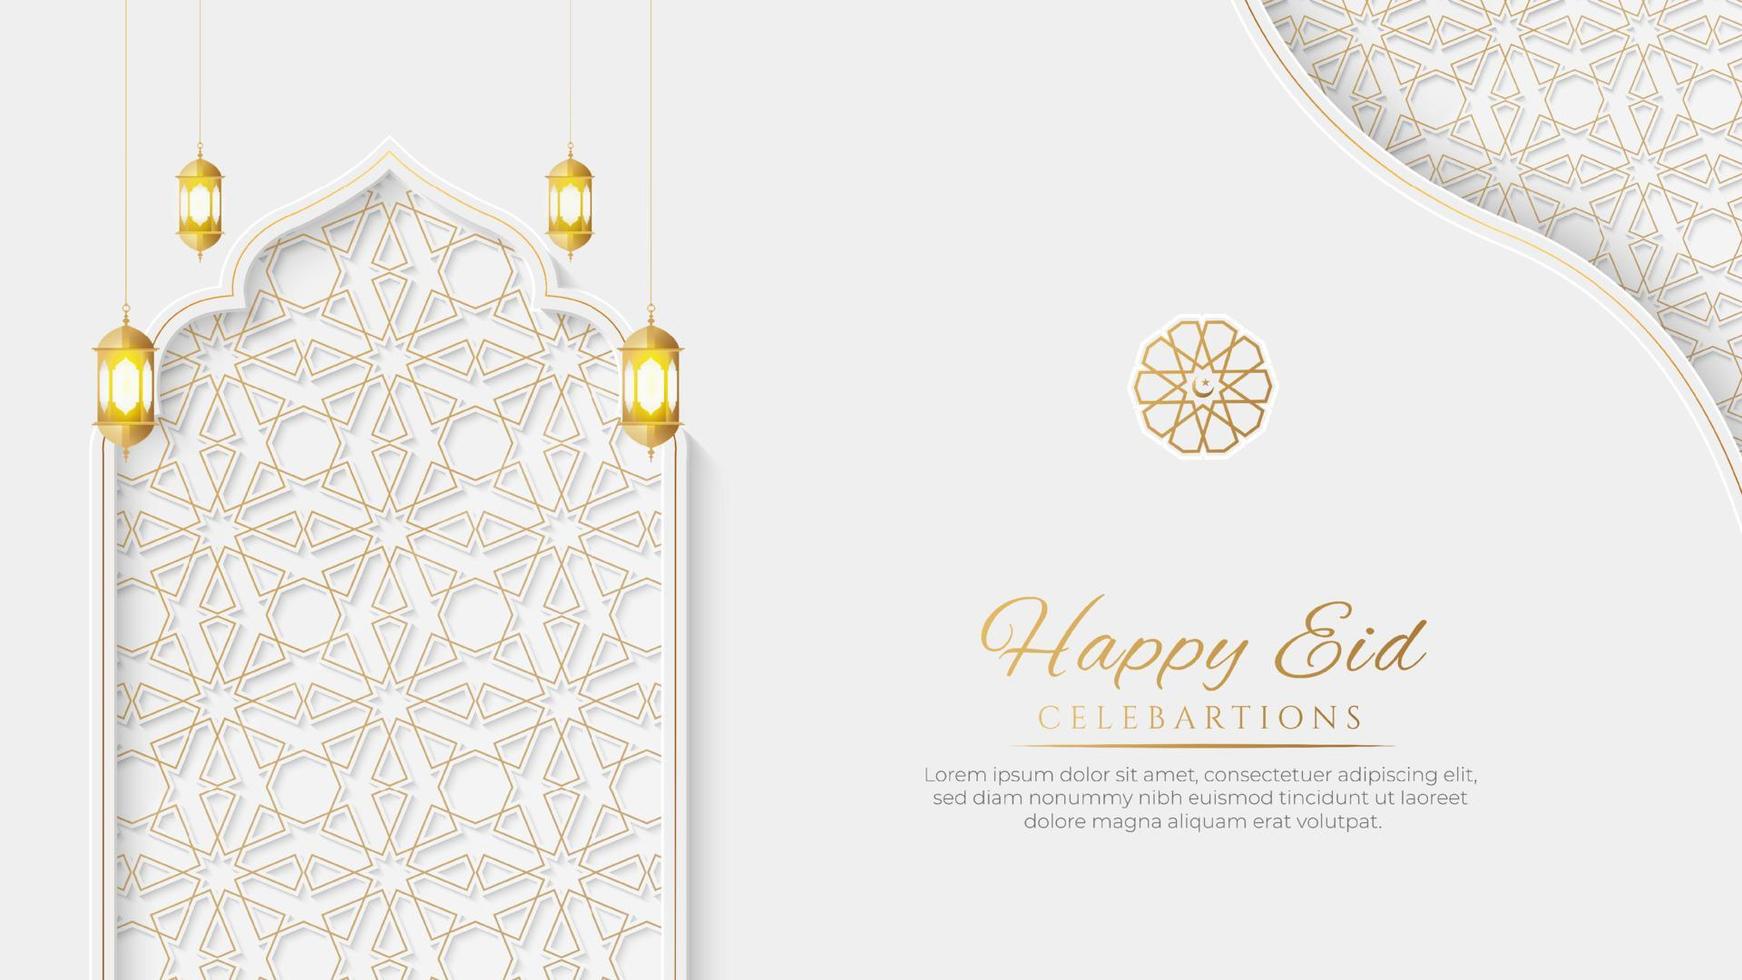 arabe islamique élégant fond ornemental de luxe blanc et doré avec des lanternes décoratives vecteur